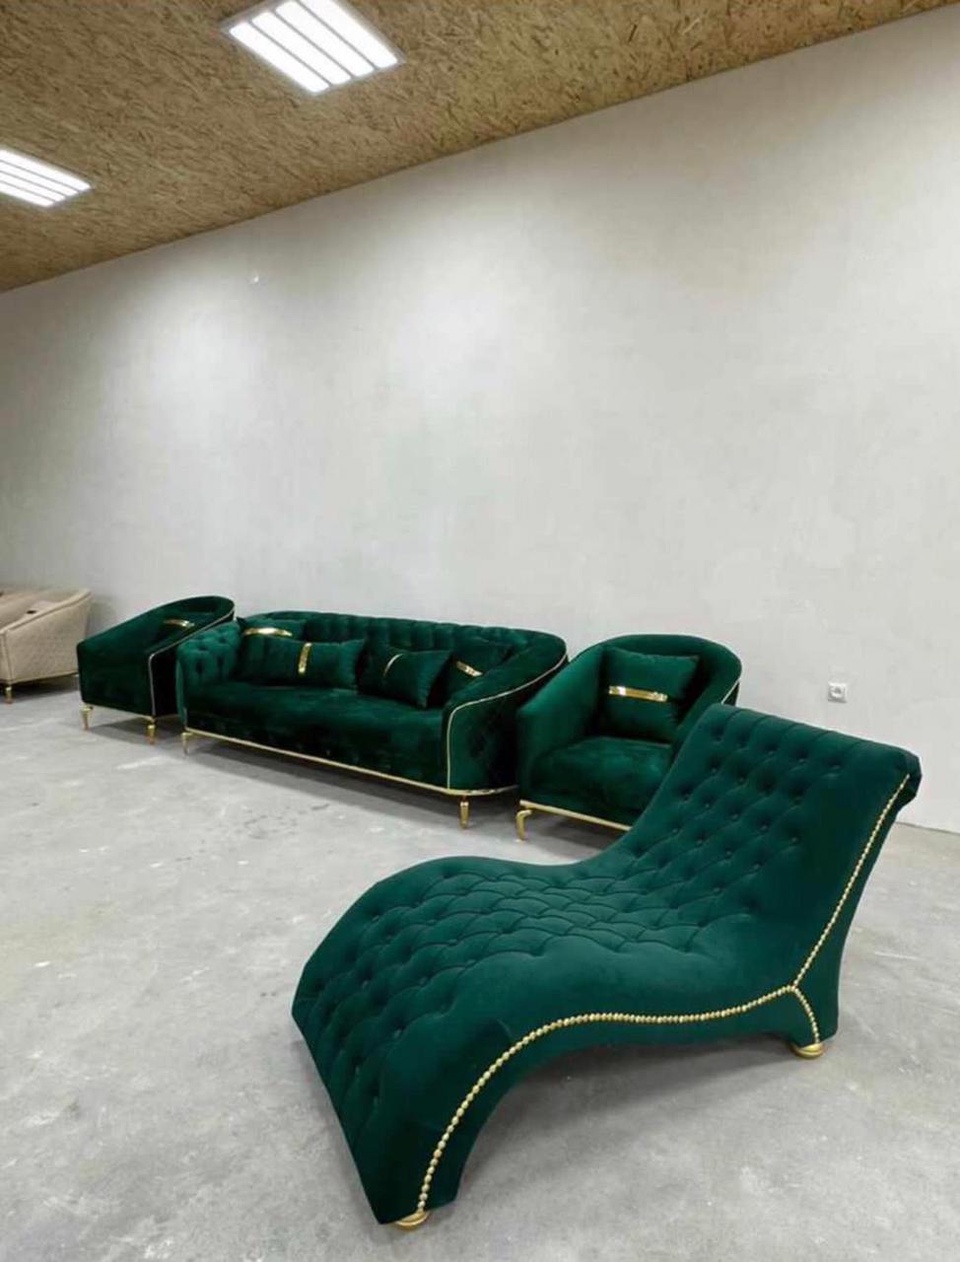 Диван, кресла, диван-кушетка - 0 ₽, заказать онлайн.